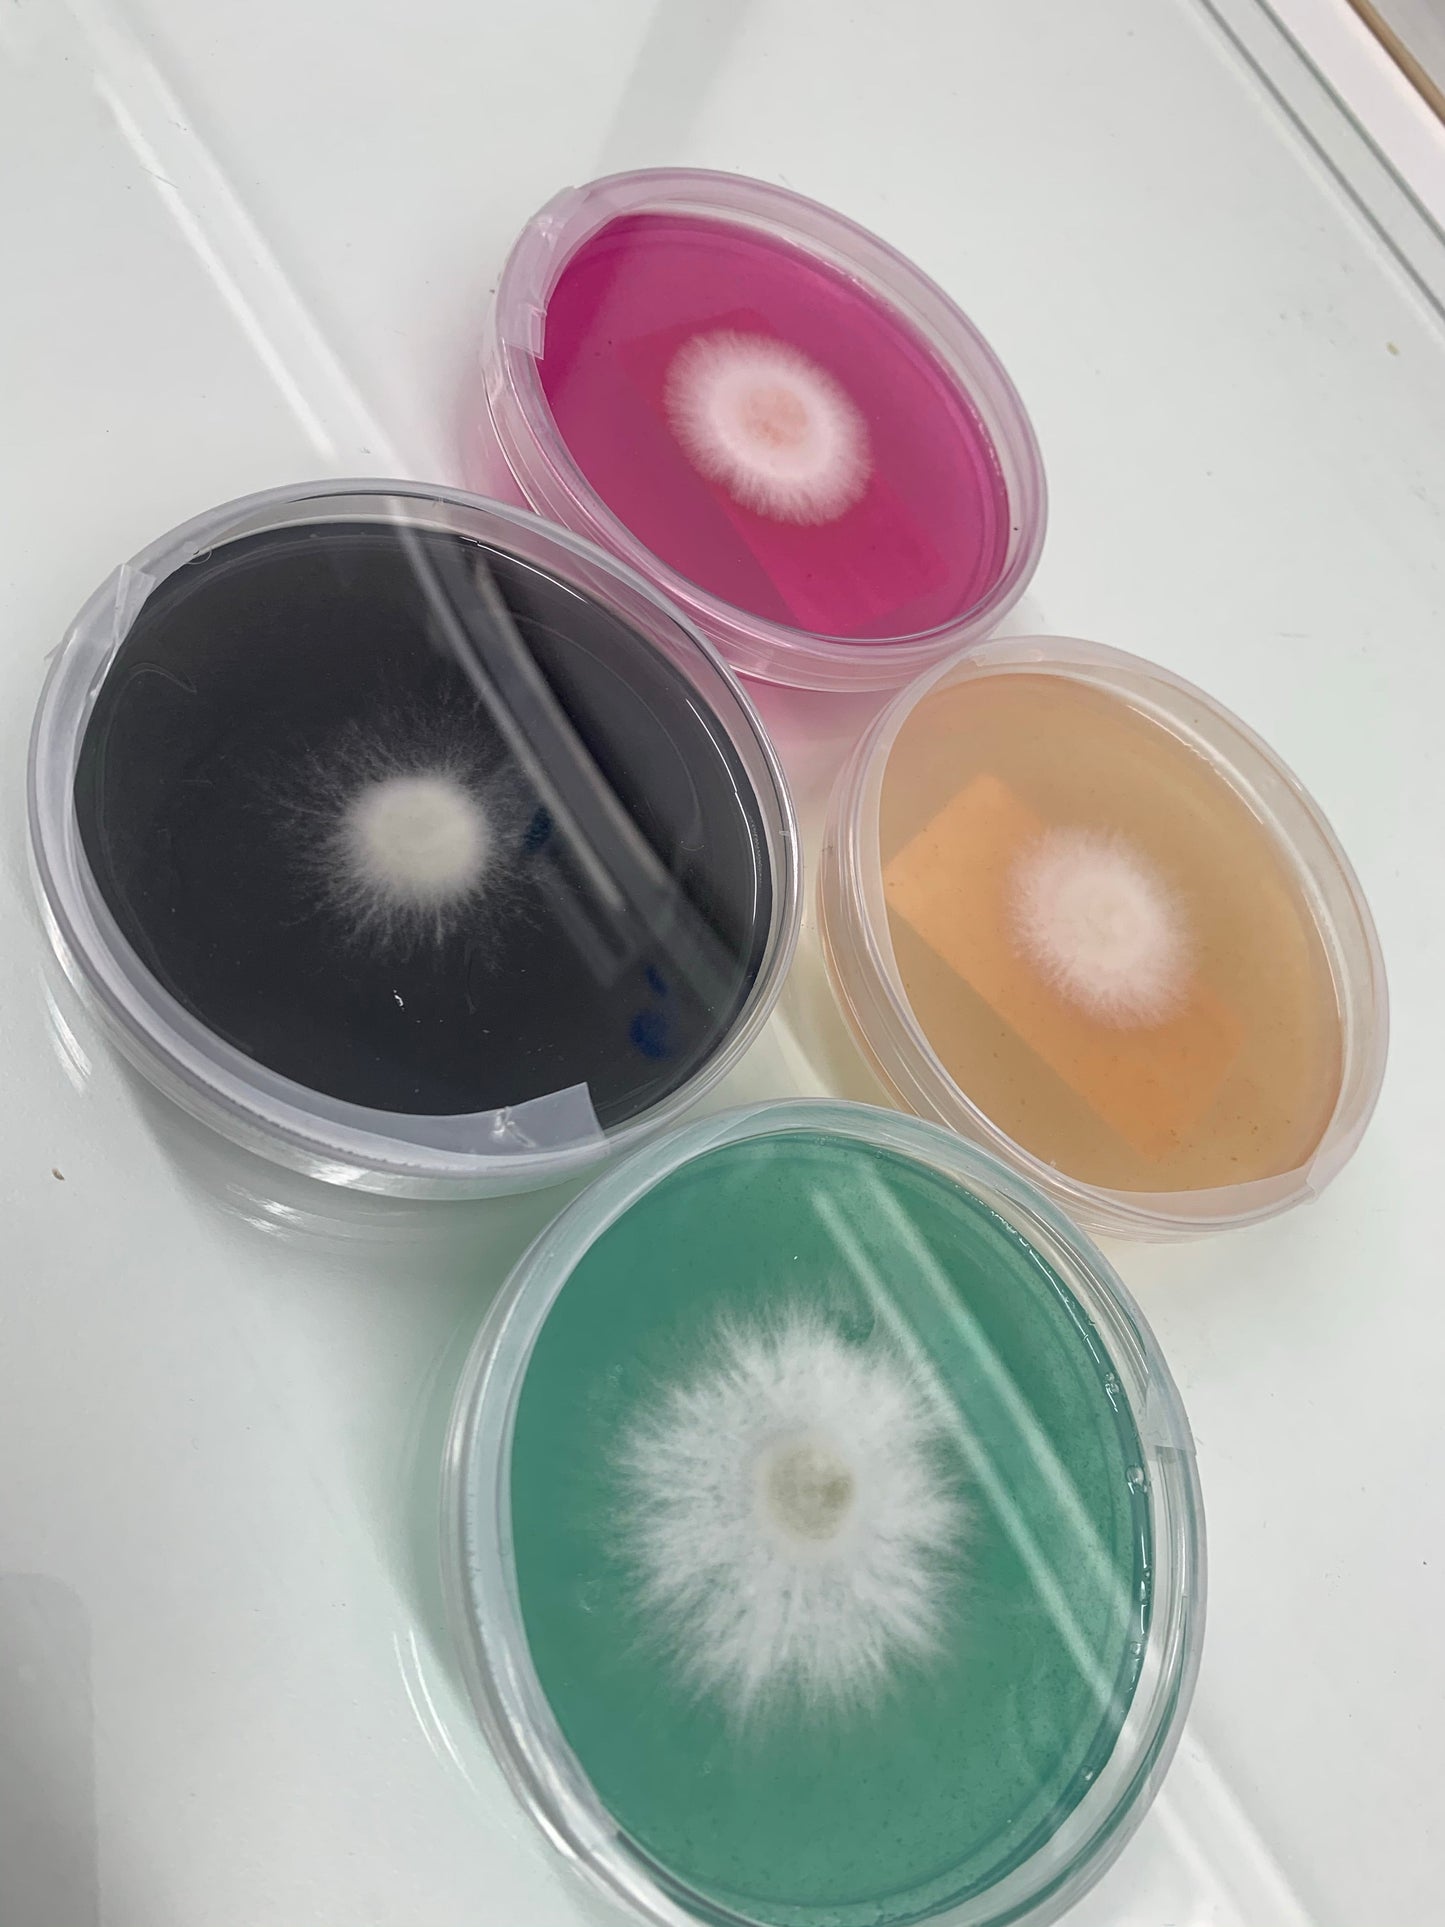 MycoPunks - 20 Light Malt Extract Agar Custom (LME) Petri Dishes for Fungal Cultures - Custom Agar